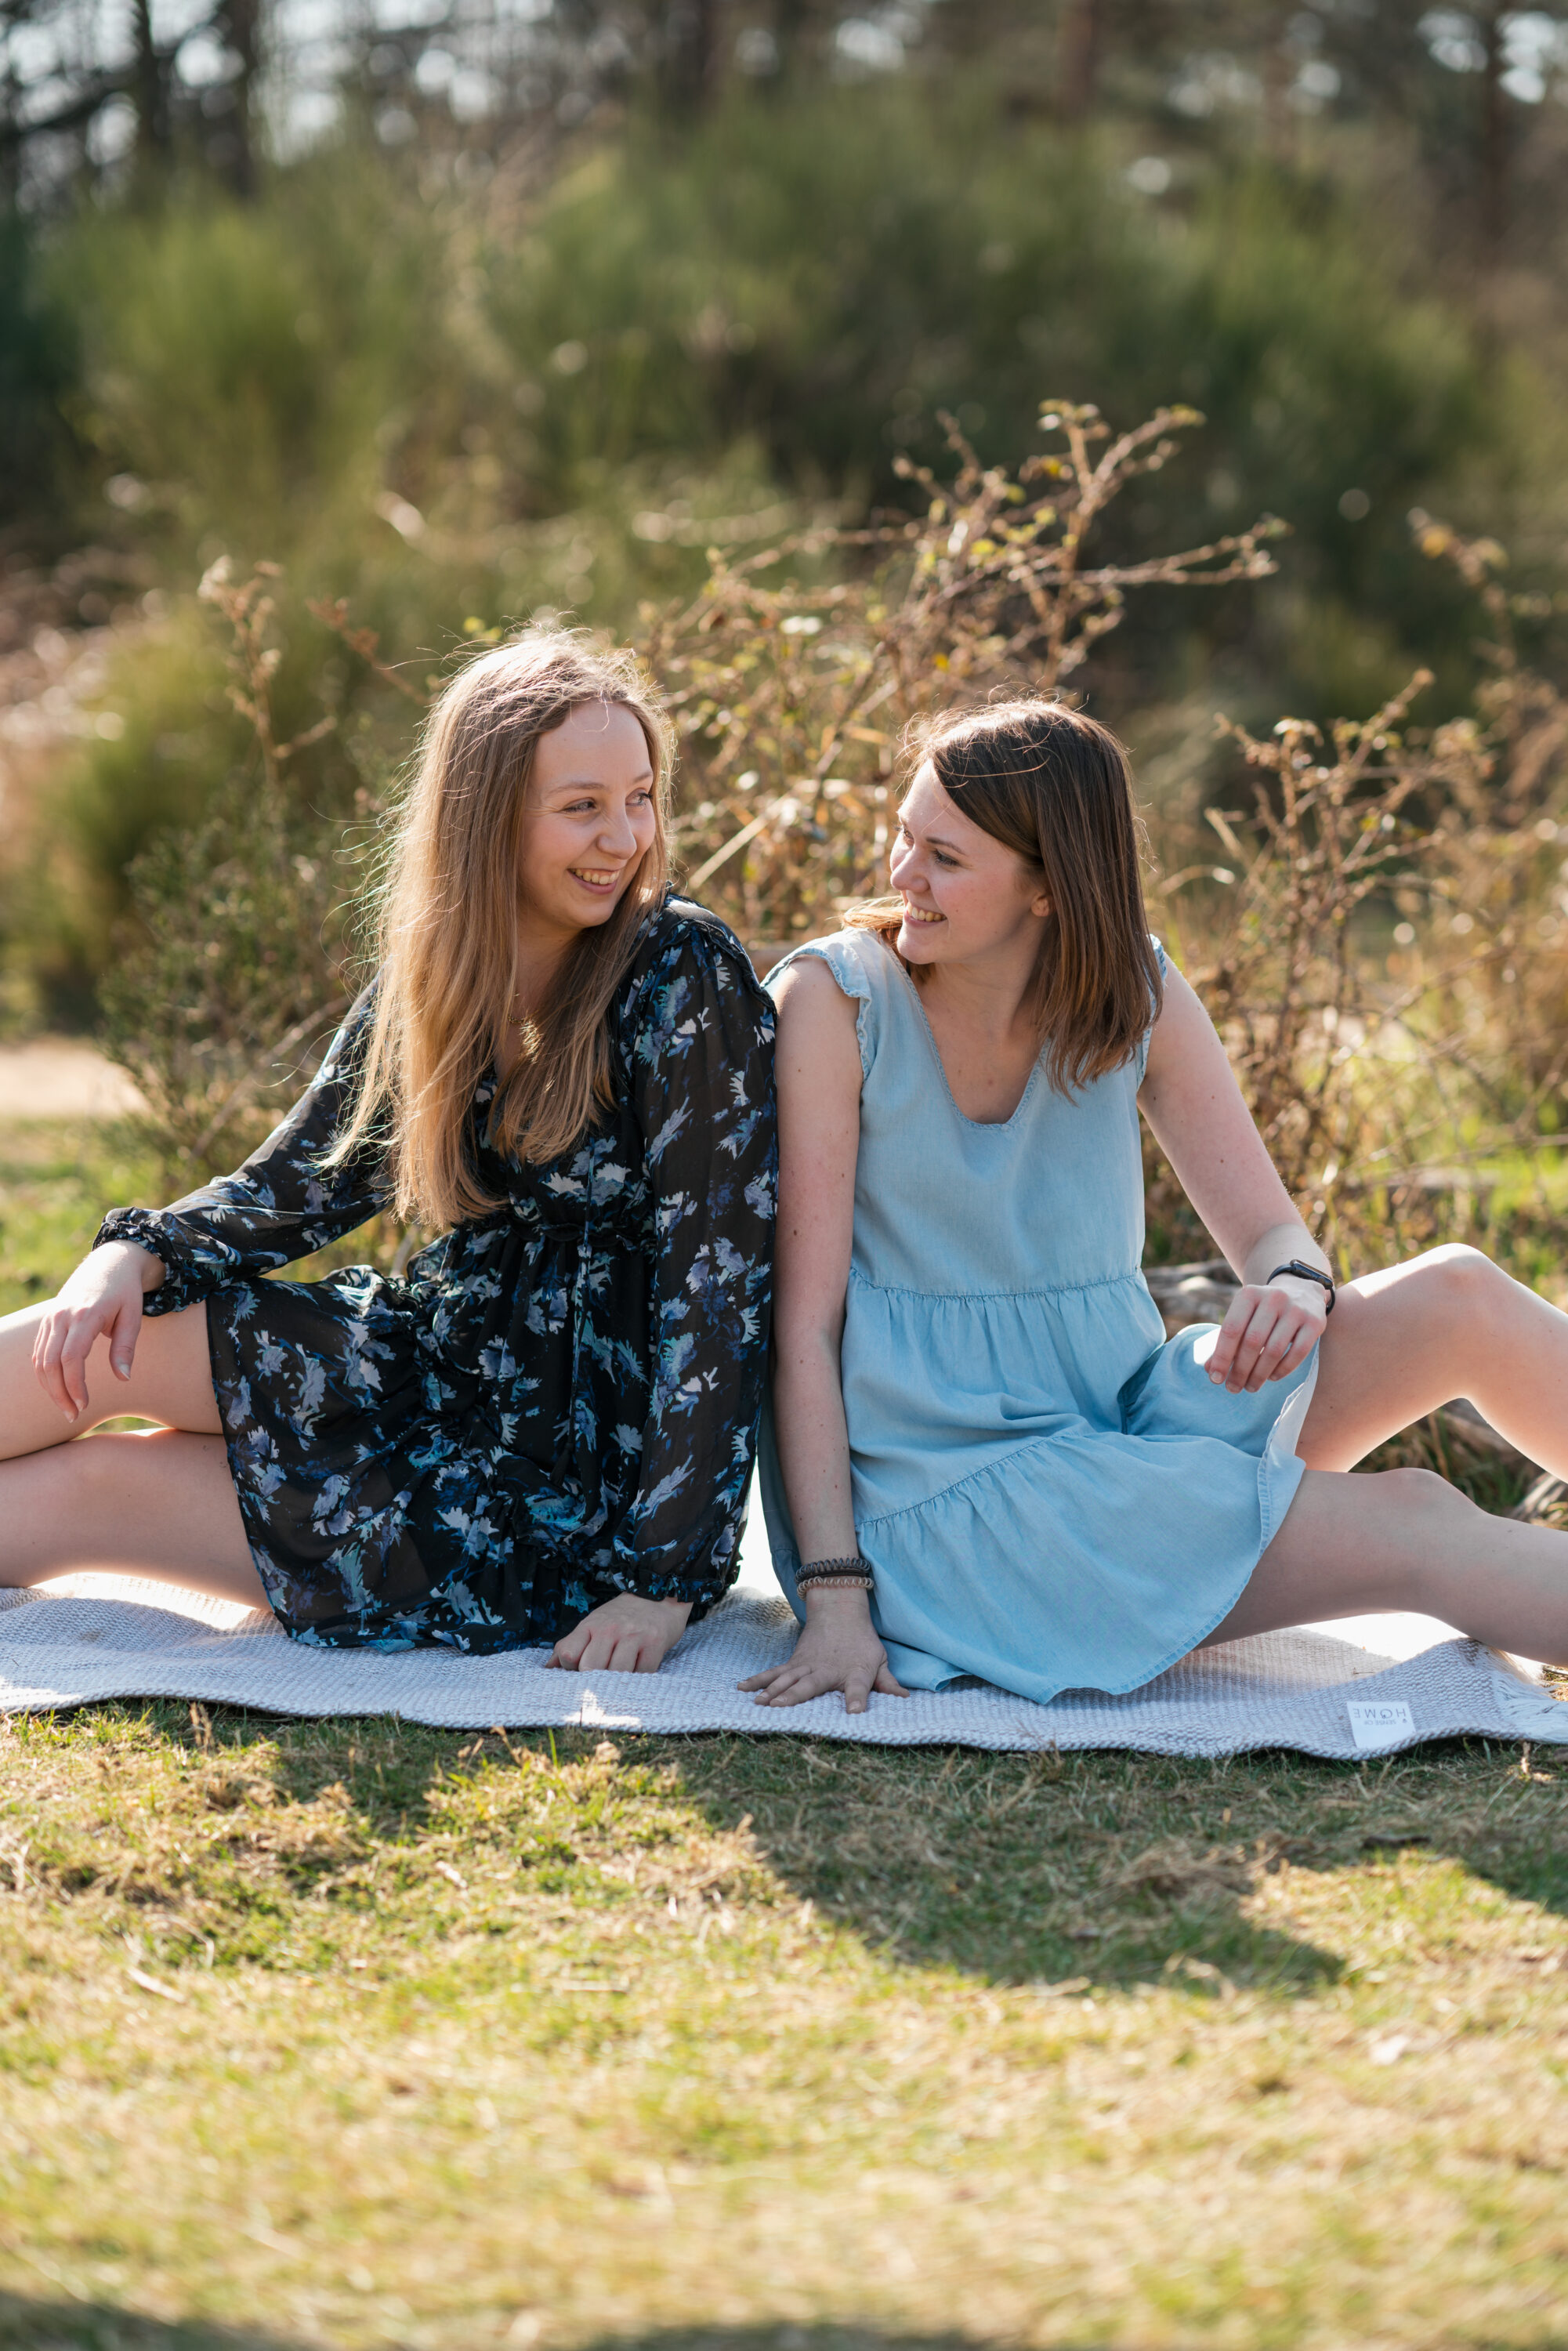 Fotoshooting für Freunde zwei Freundinnen sitzend